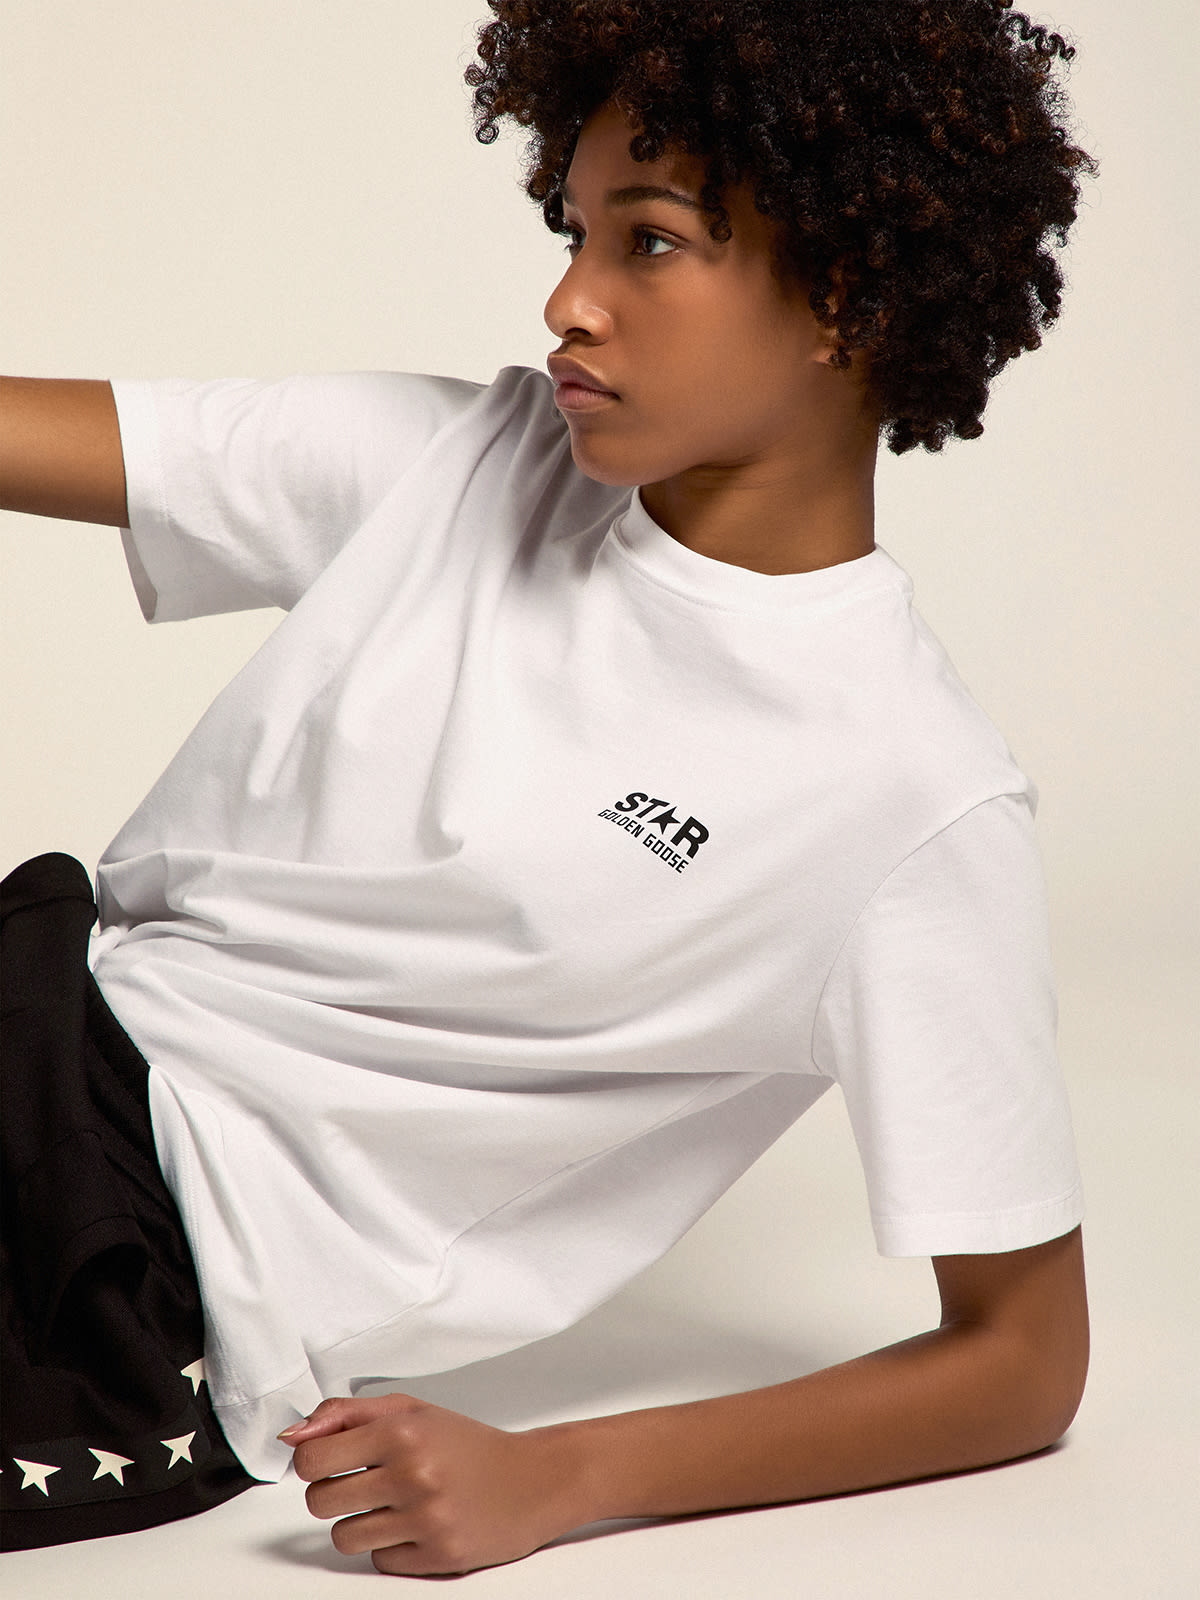 Golden Goose - Camiseta blanca de mujer de la Colección Star con logotipo y estrella de color negro en contraste in 